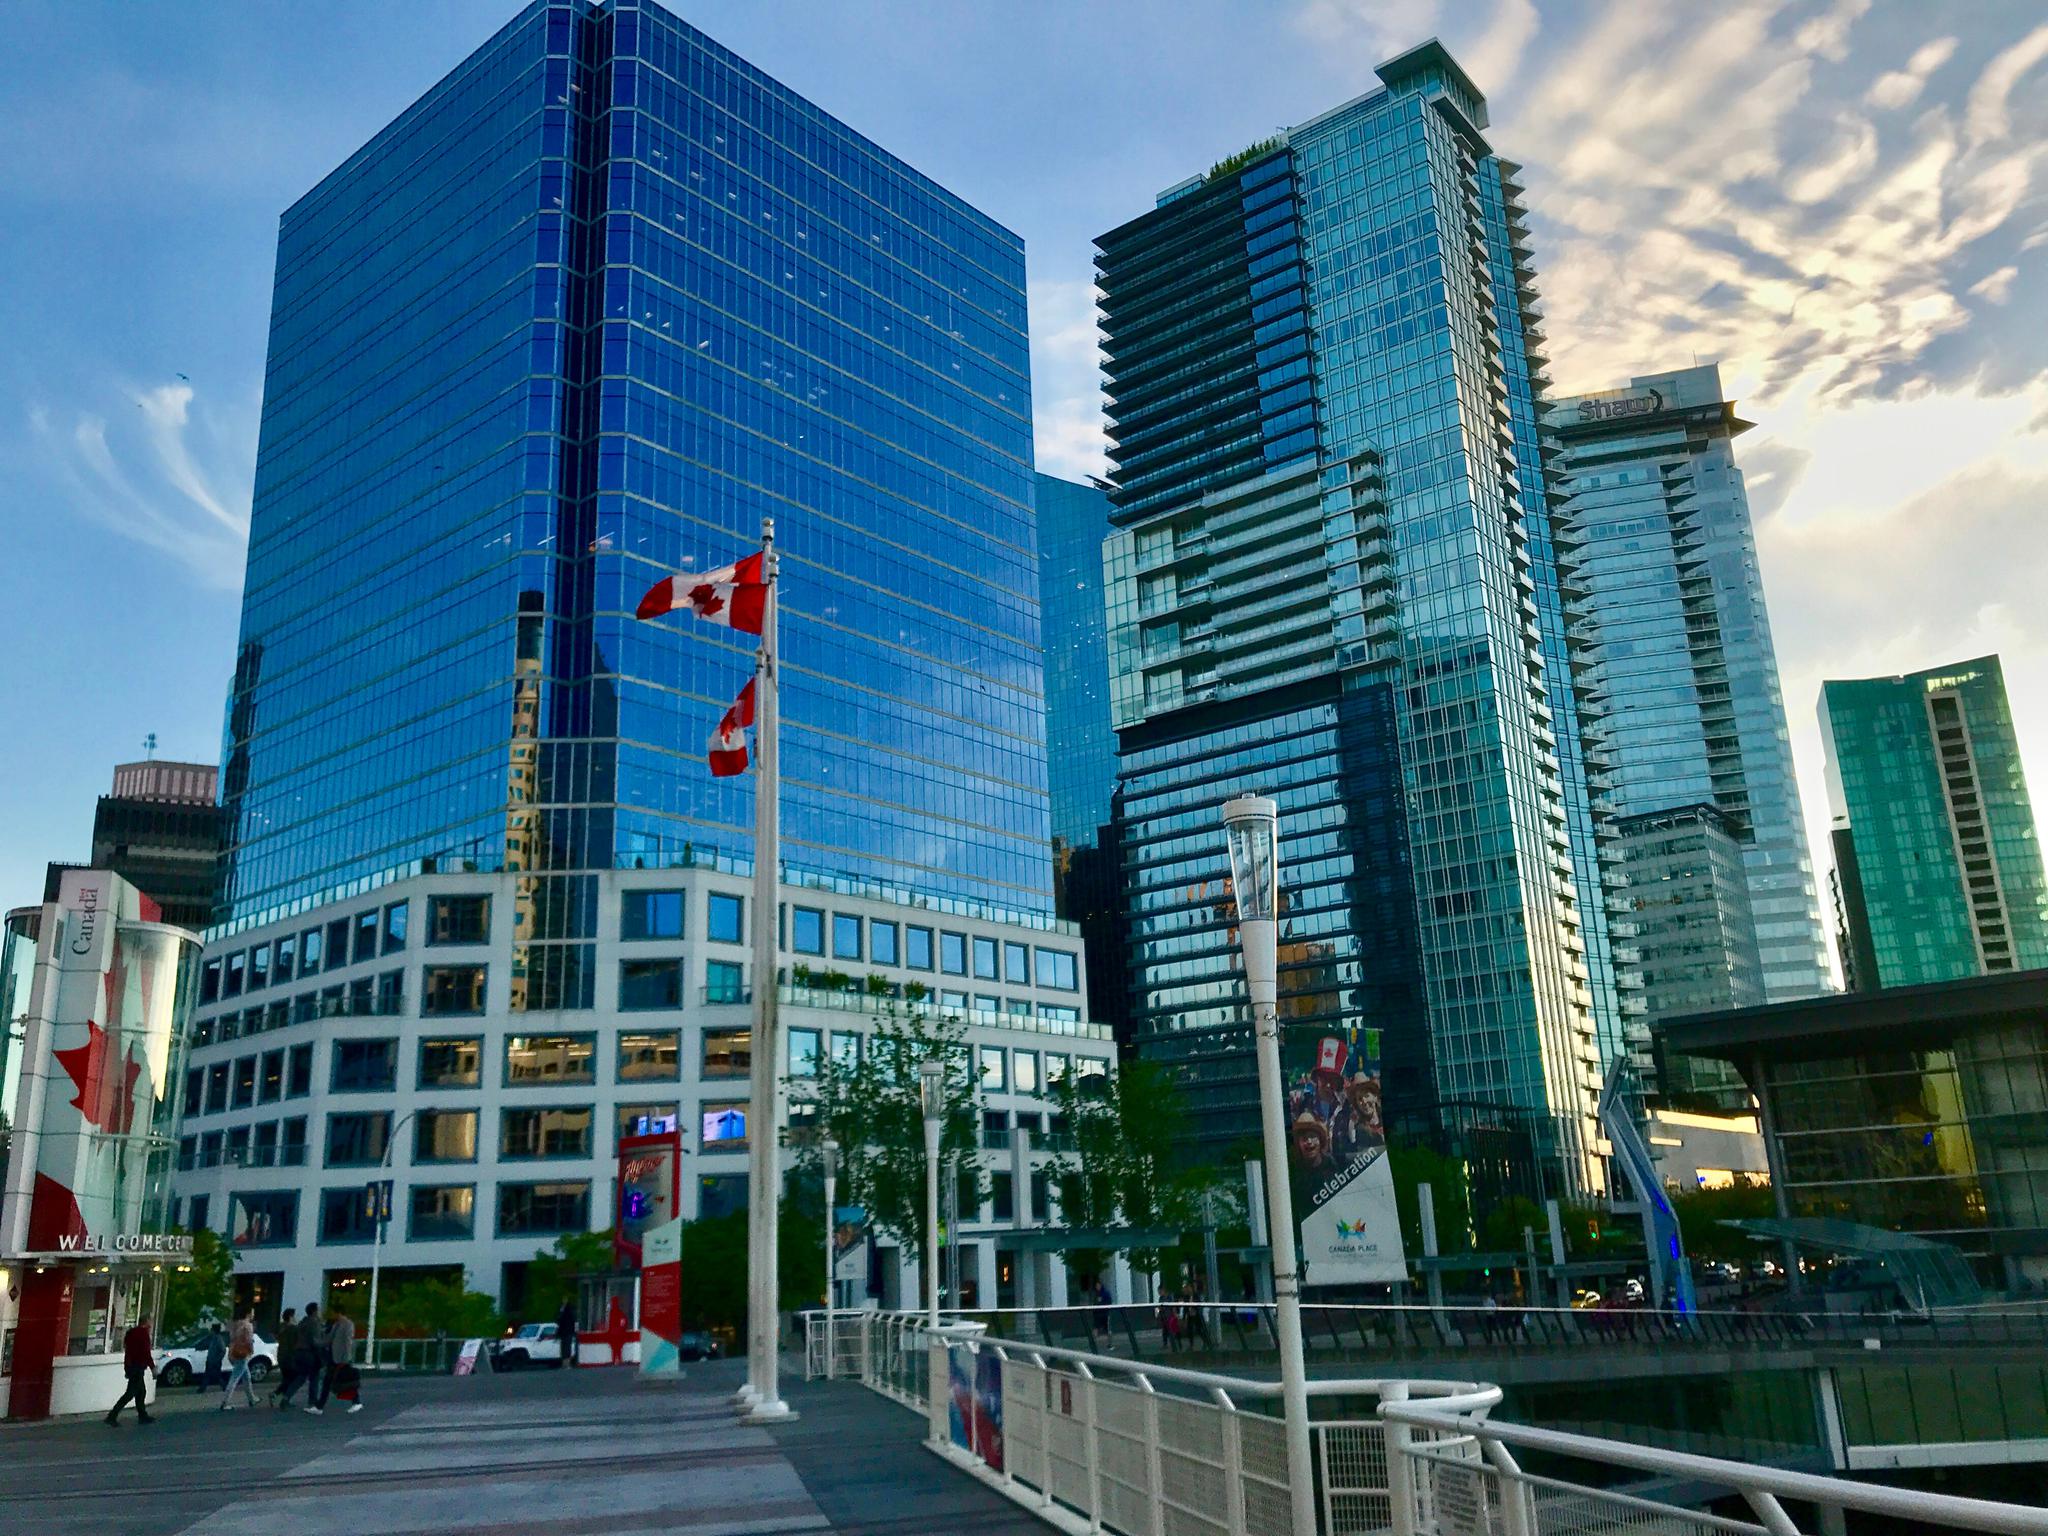 加拿大最大城市图片